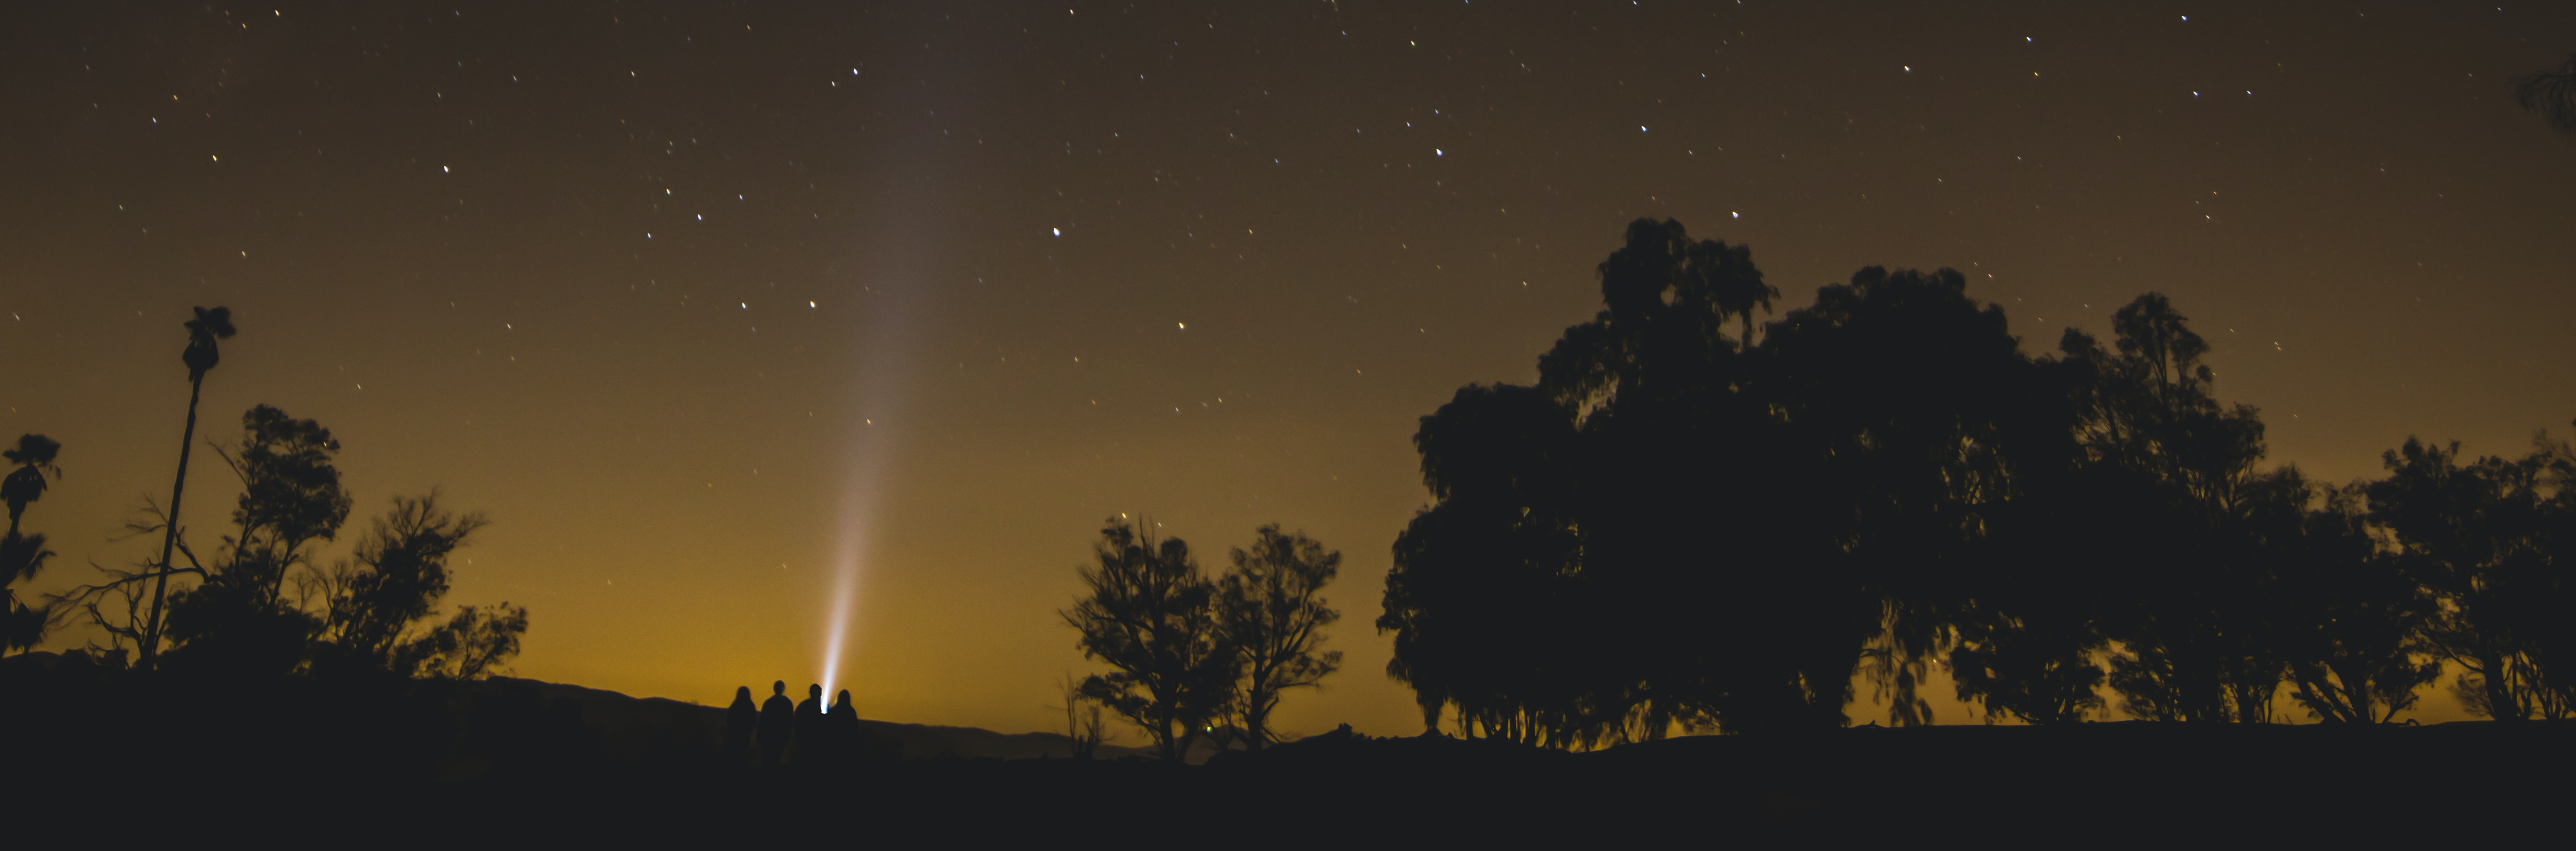 figure 6 : photo d'une silhouette de 5 observateurs sous un ciel étoilé - Josh Felise